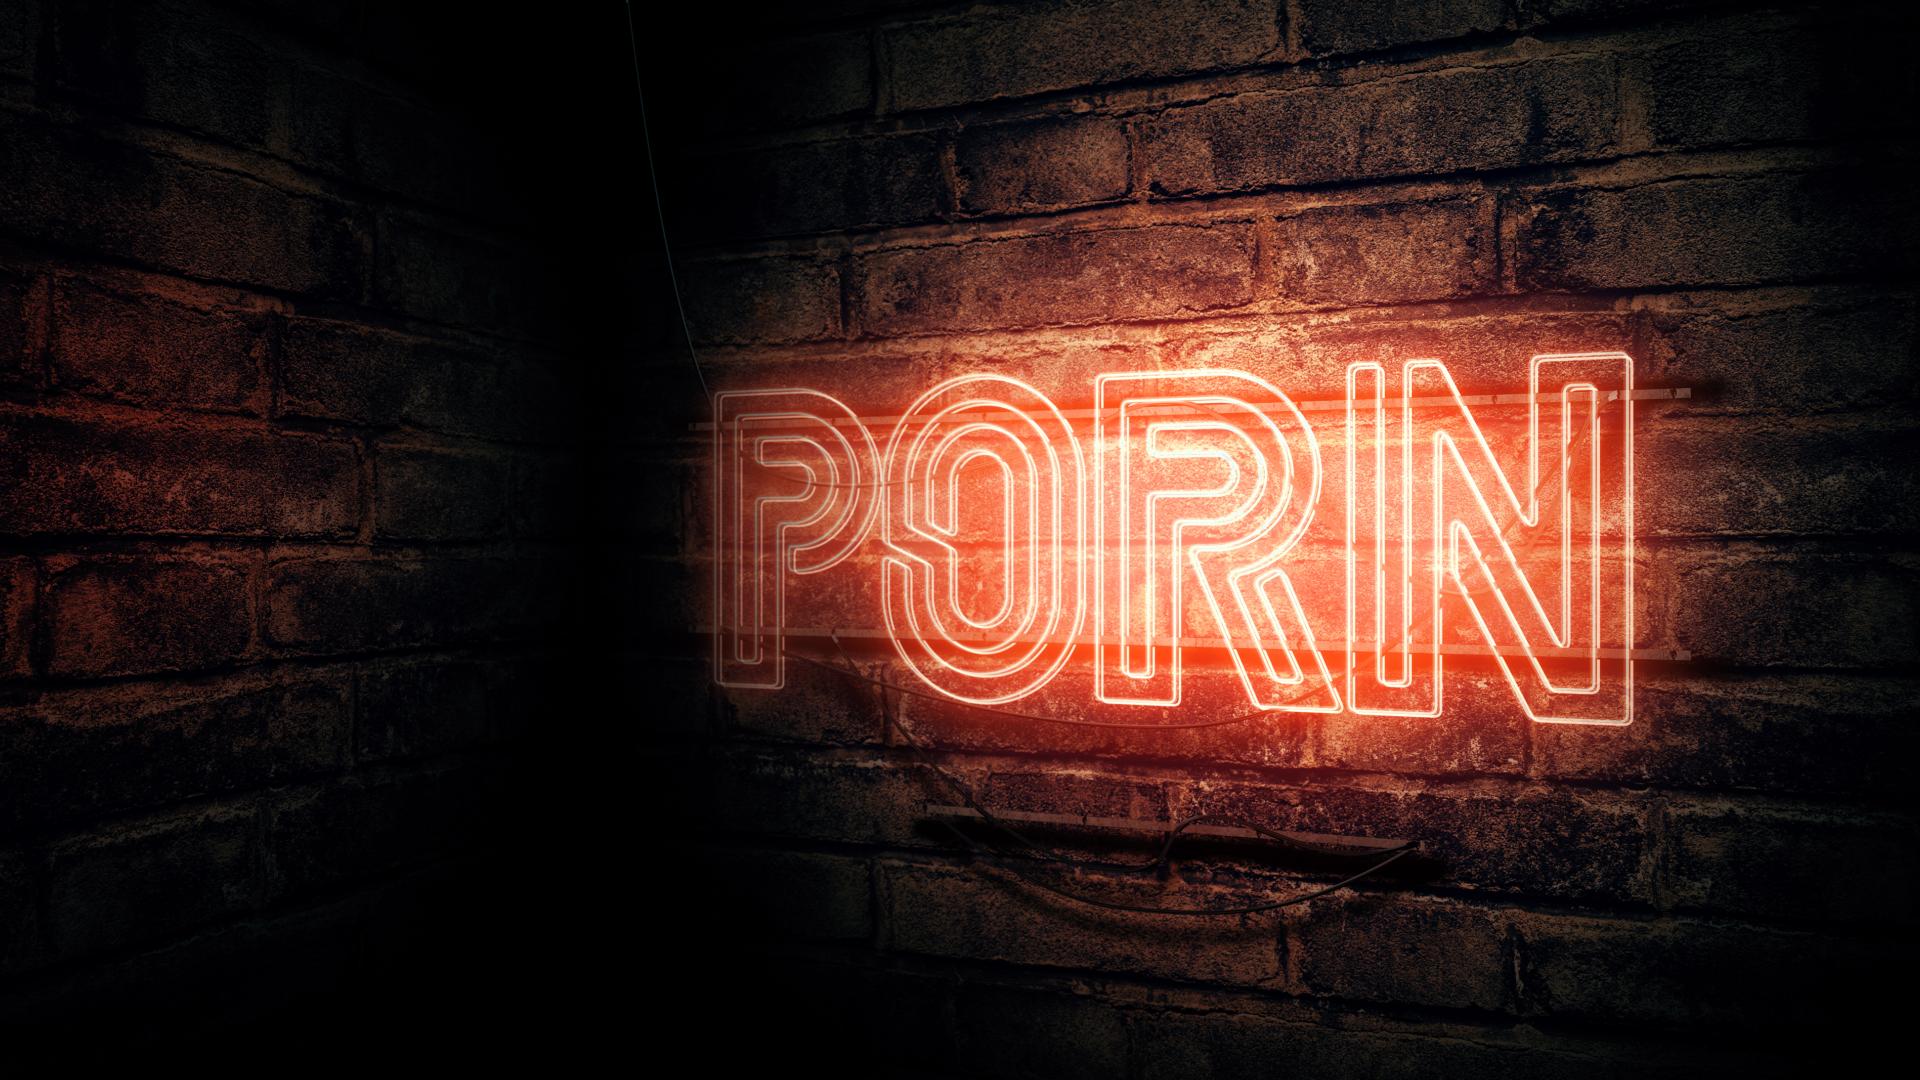 Porn